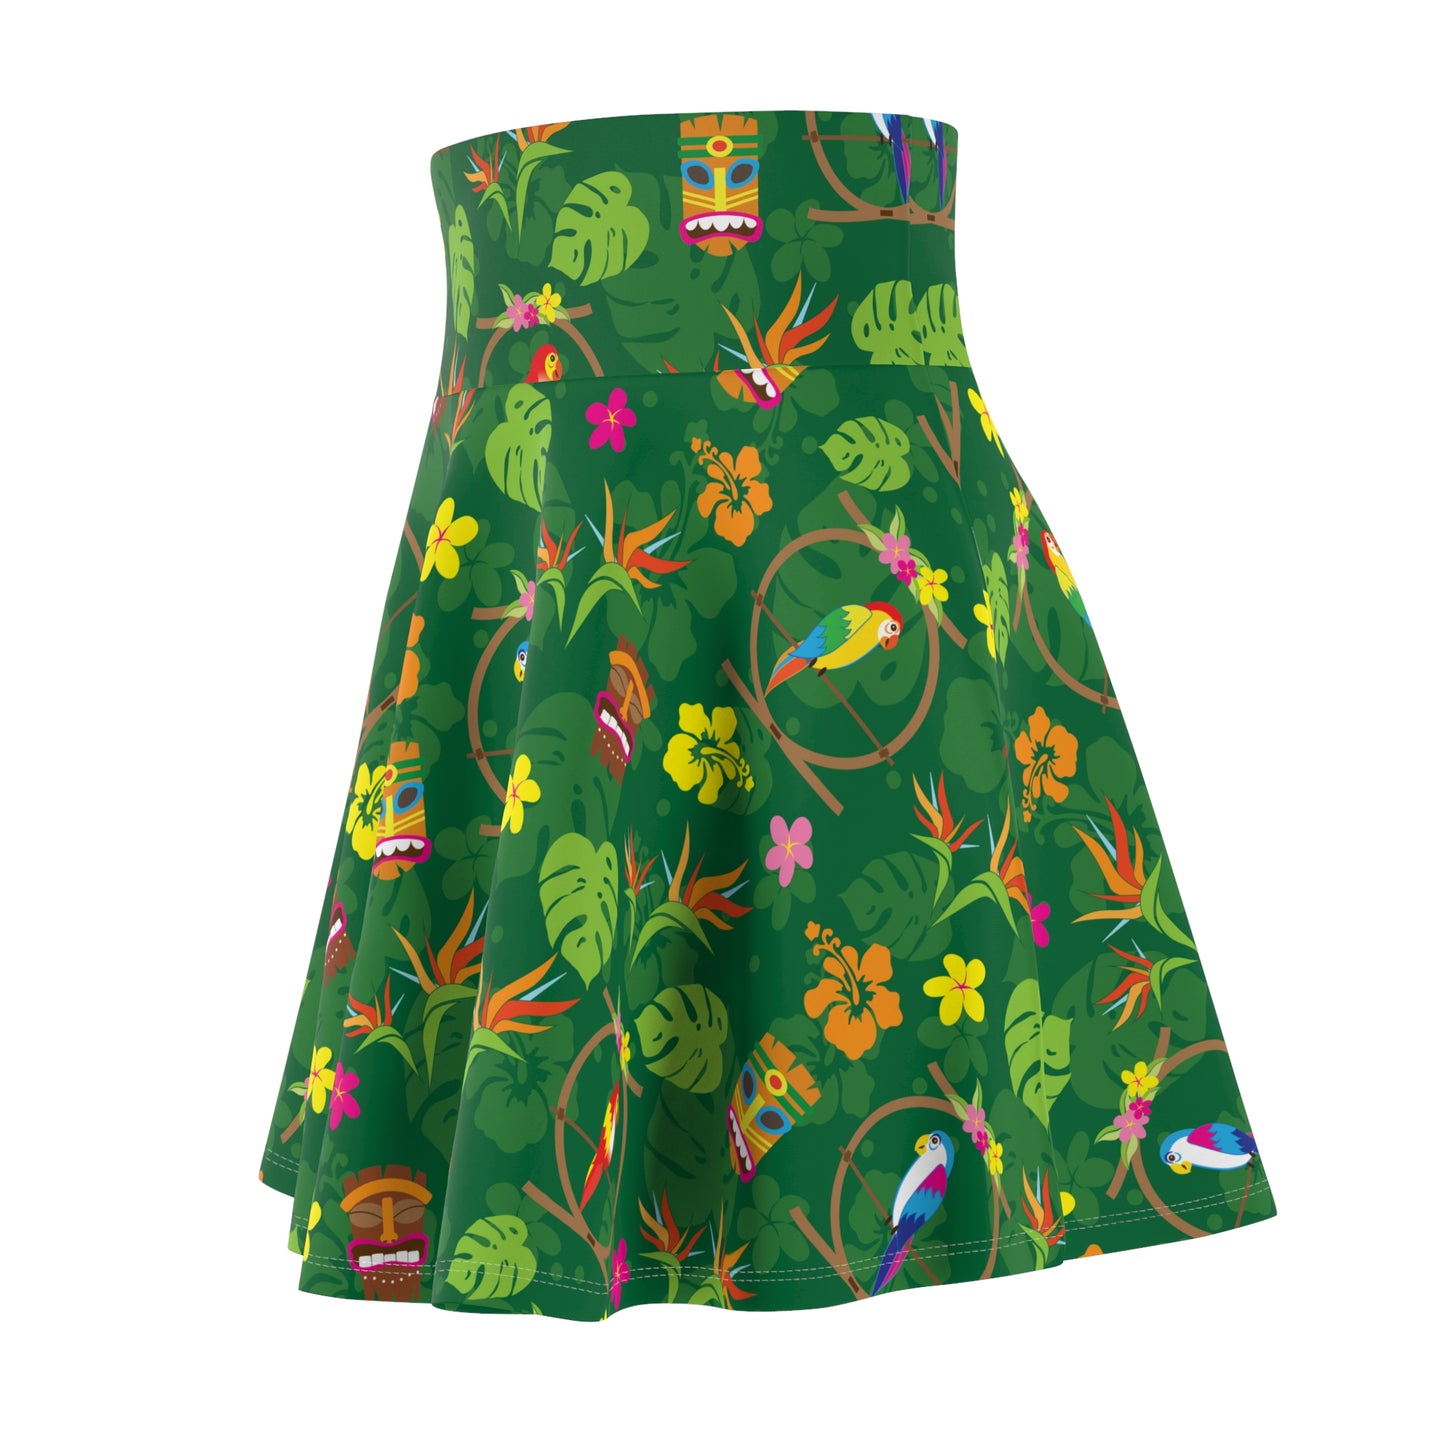 Enchanted Tiki Tropical Room Women's Skater Skirt (AOP)